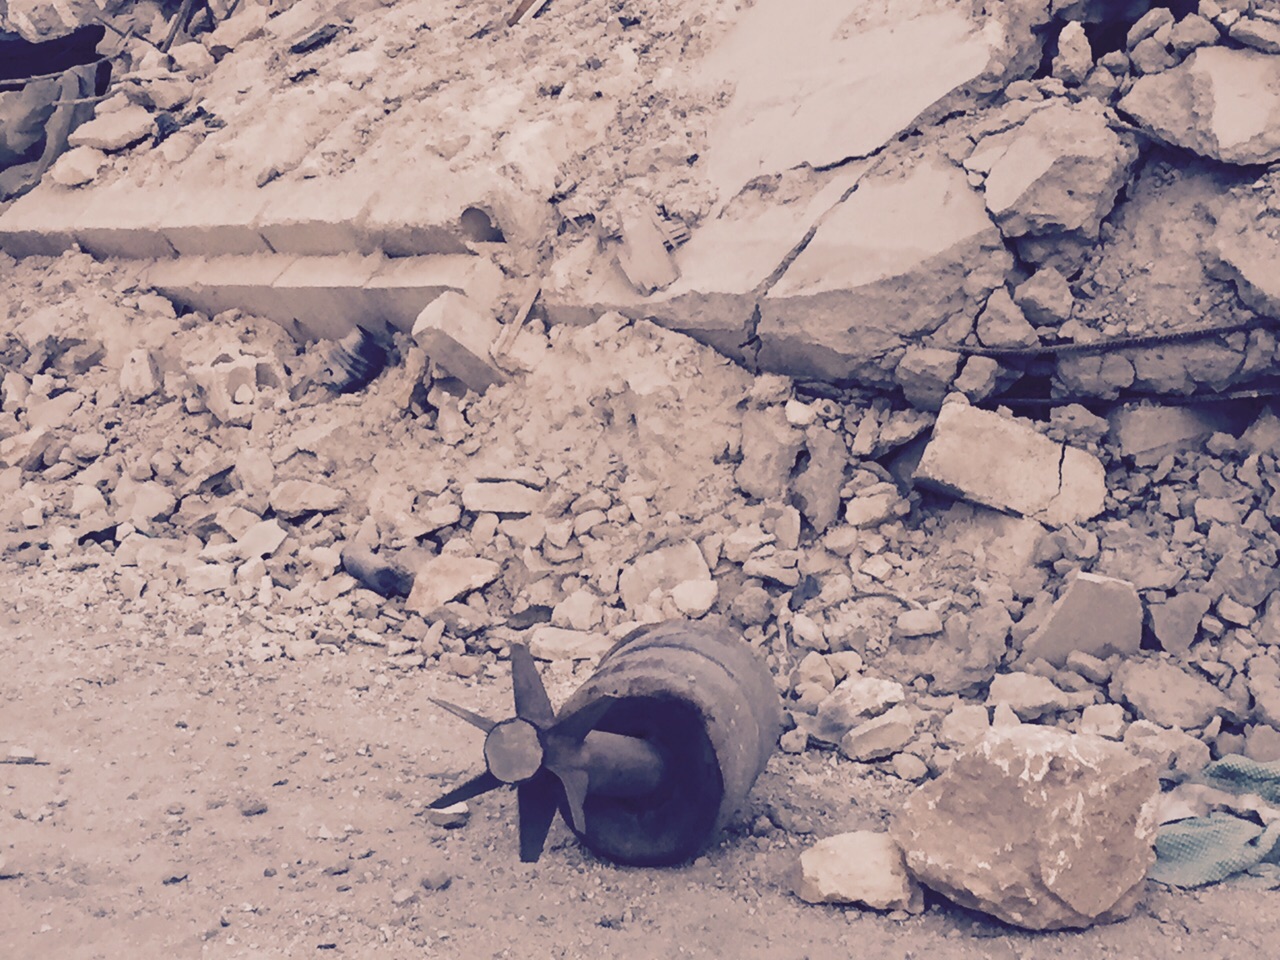 IŞİD'in el yapımı olduğu belirtilen havan mermisi